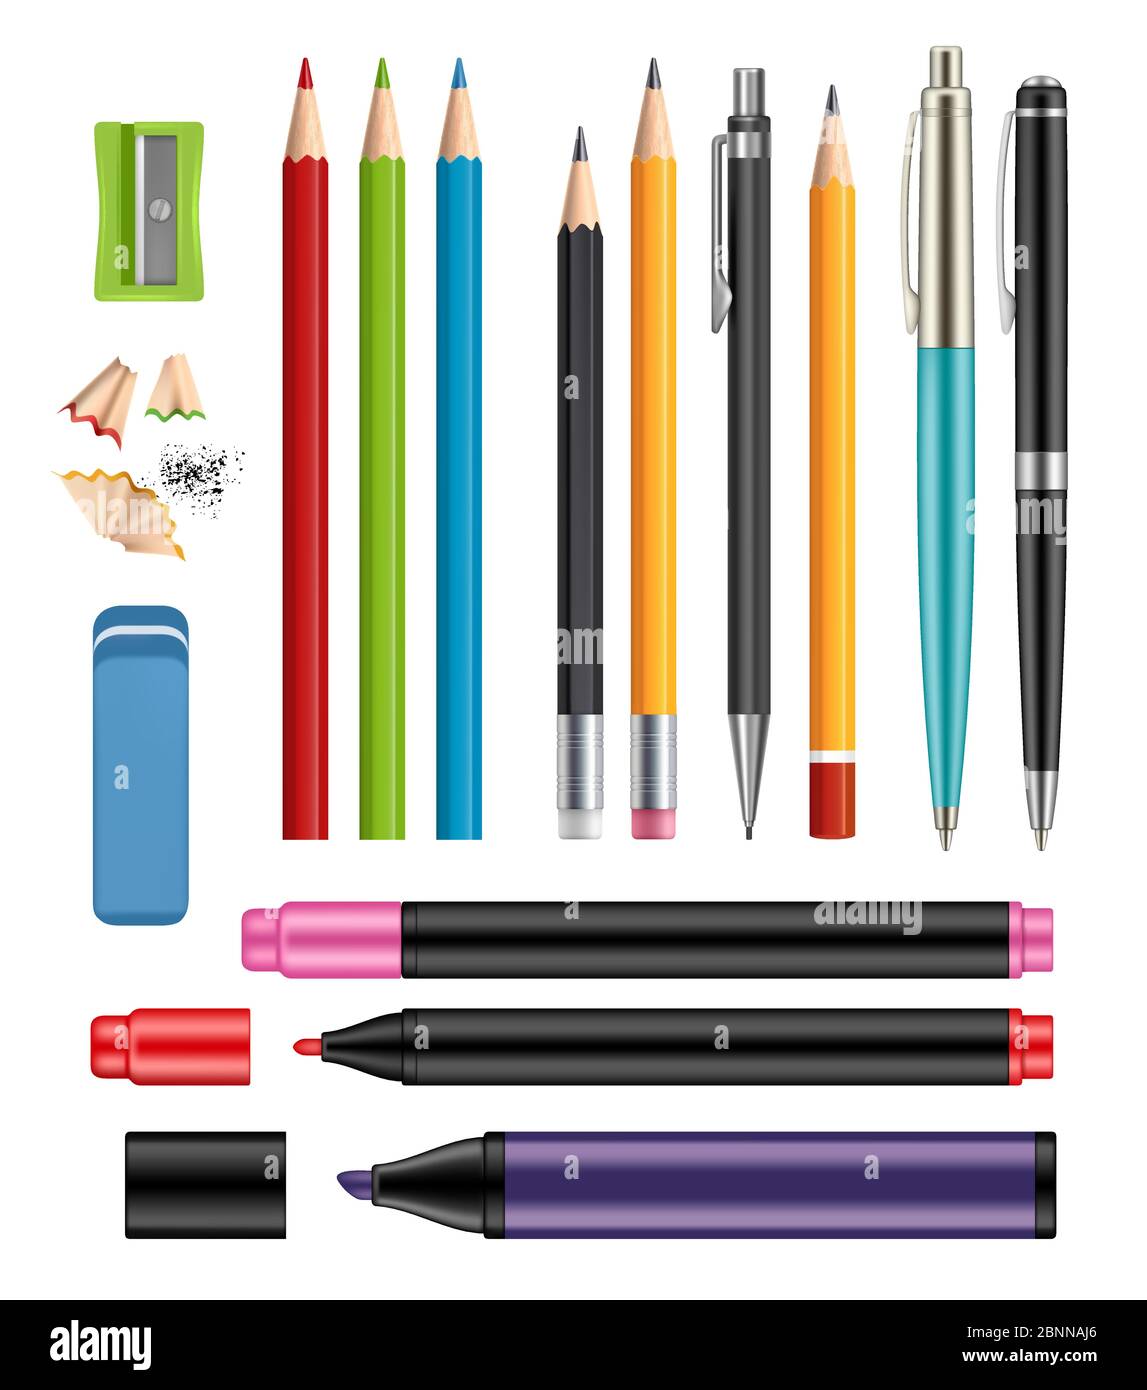 Penna e matite. Ufficio cancelleria scuola di articoli colorati di istruzione aiutare vettore 3d collezione realistica di penne di plastica legno matite Illustrazione Vettoriale